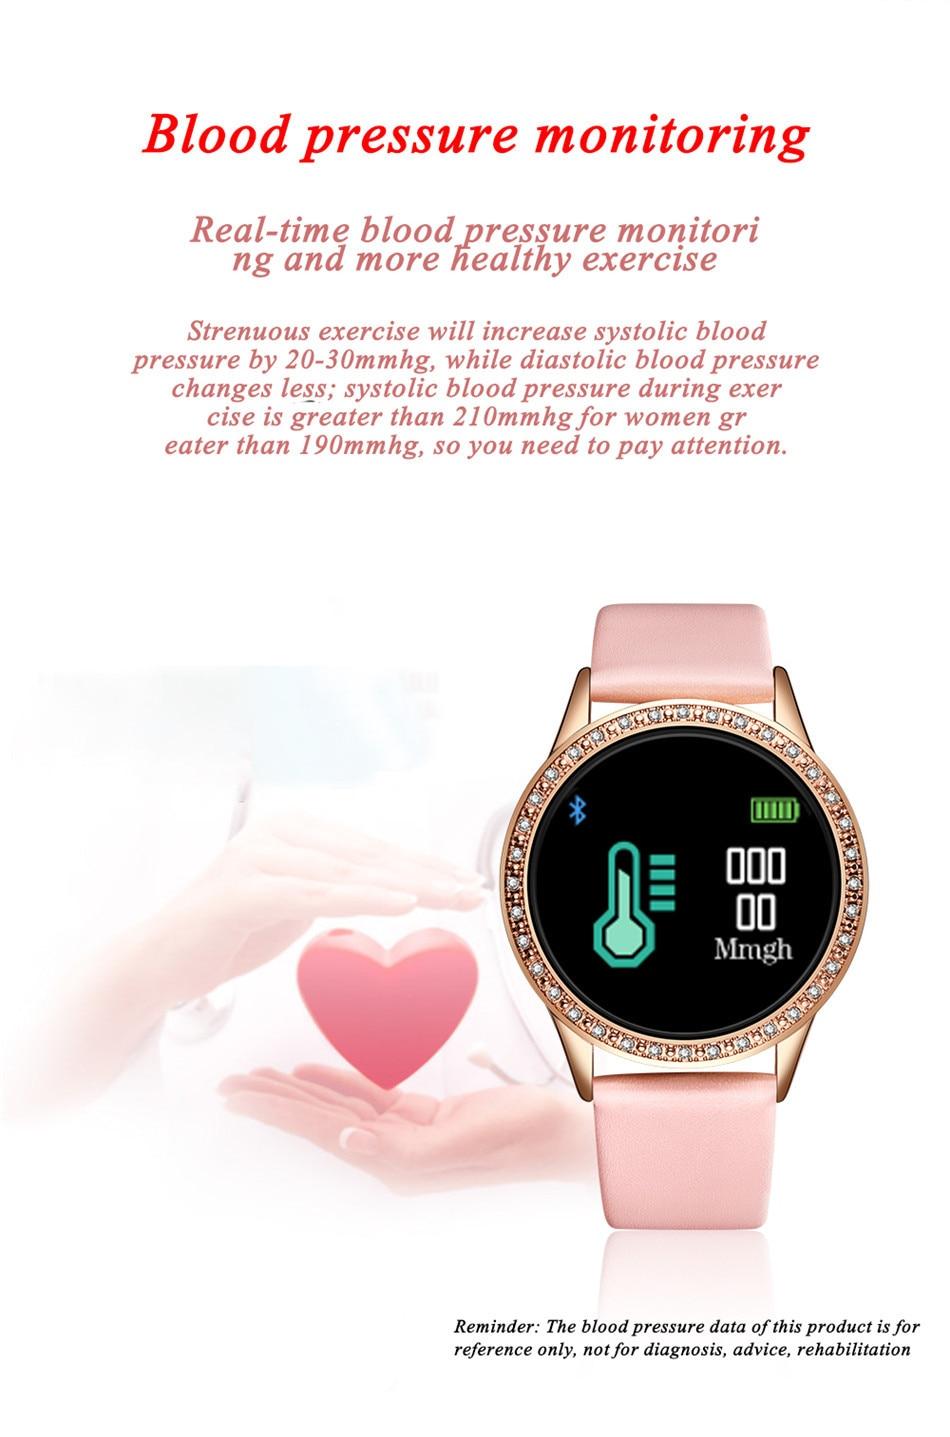 LIGE Relogio digital feminino Waterproof sport for iPhone Luxury Blood Pressure Fashion Calorie Women Men Electronic wrist Watch